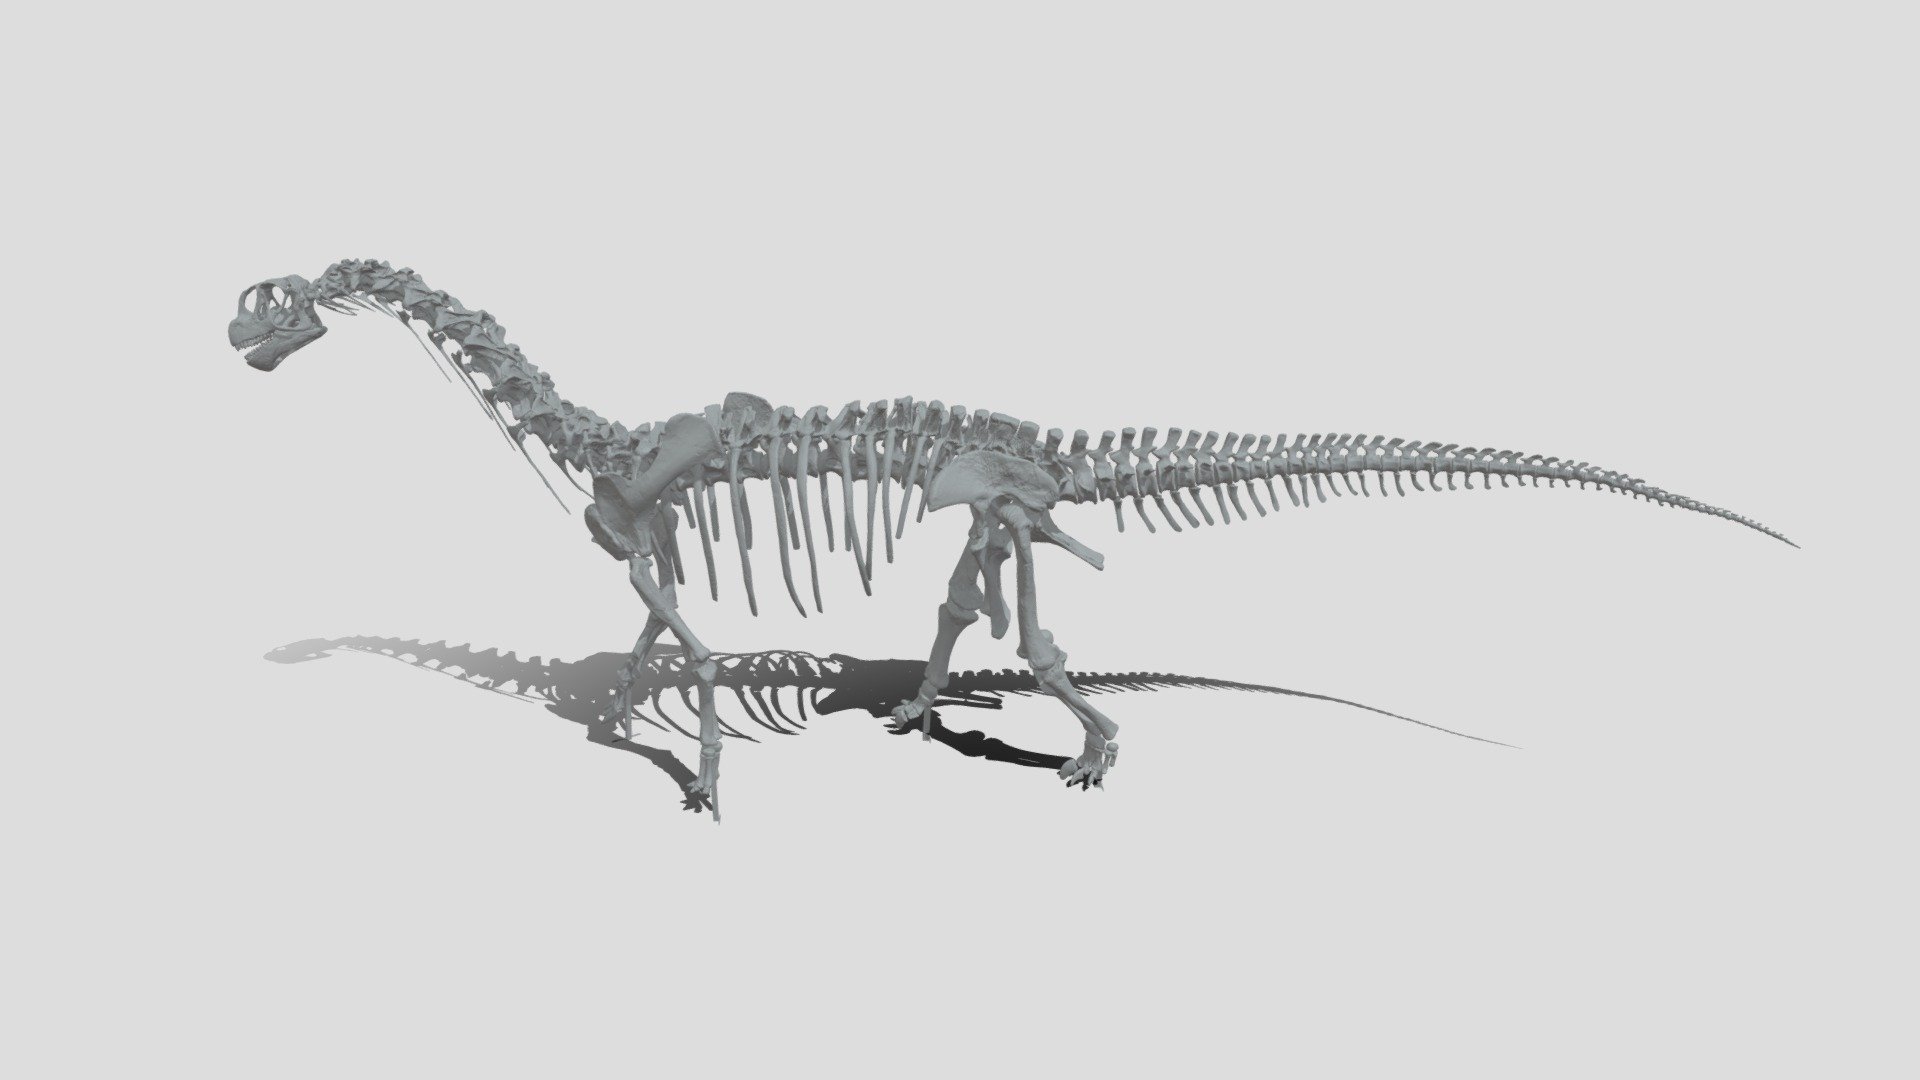 データ容量が半分の軽量版です。
テクスチャもありません。
タブレットやスマホで鑑賞する時にご利用ください。 - カマラサウルス軽量版 - 3D model by museum_natural_history 3d model